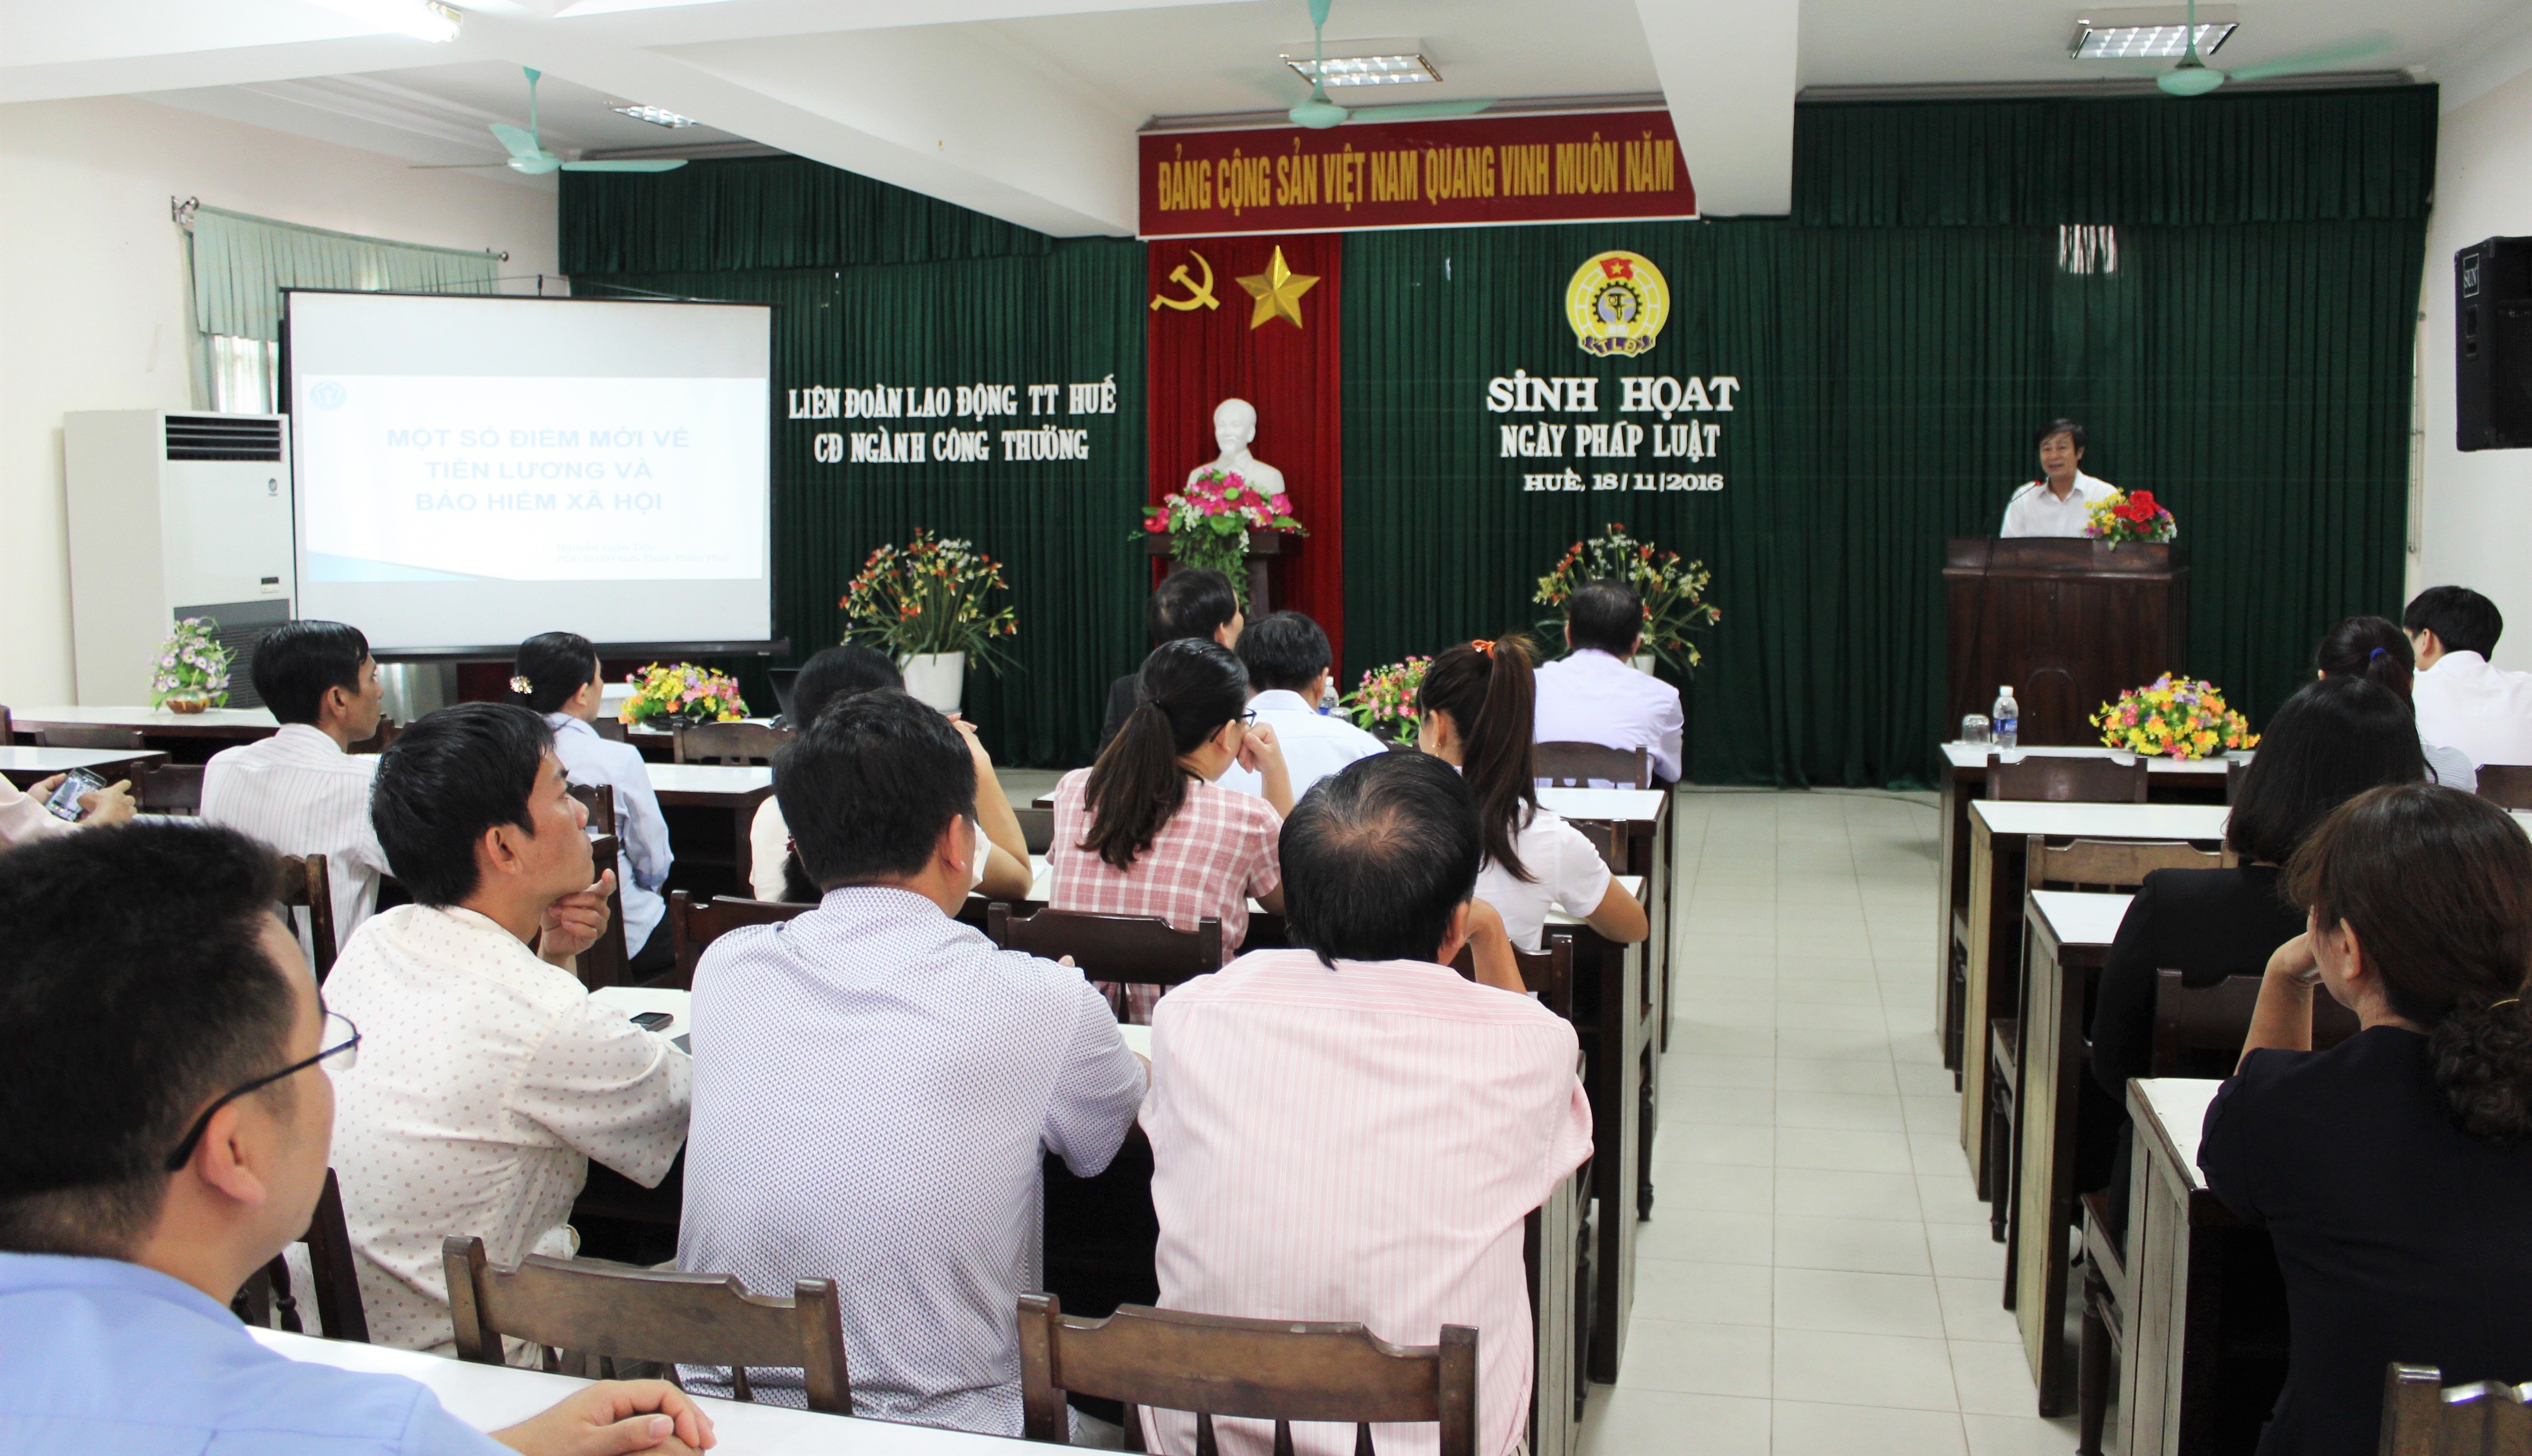 Thừa Thiên Huế: Công đoàn ngành Công Thương hưởng ứng “Ngày Pháp luật”